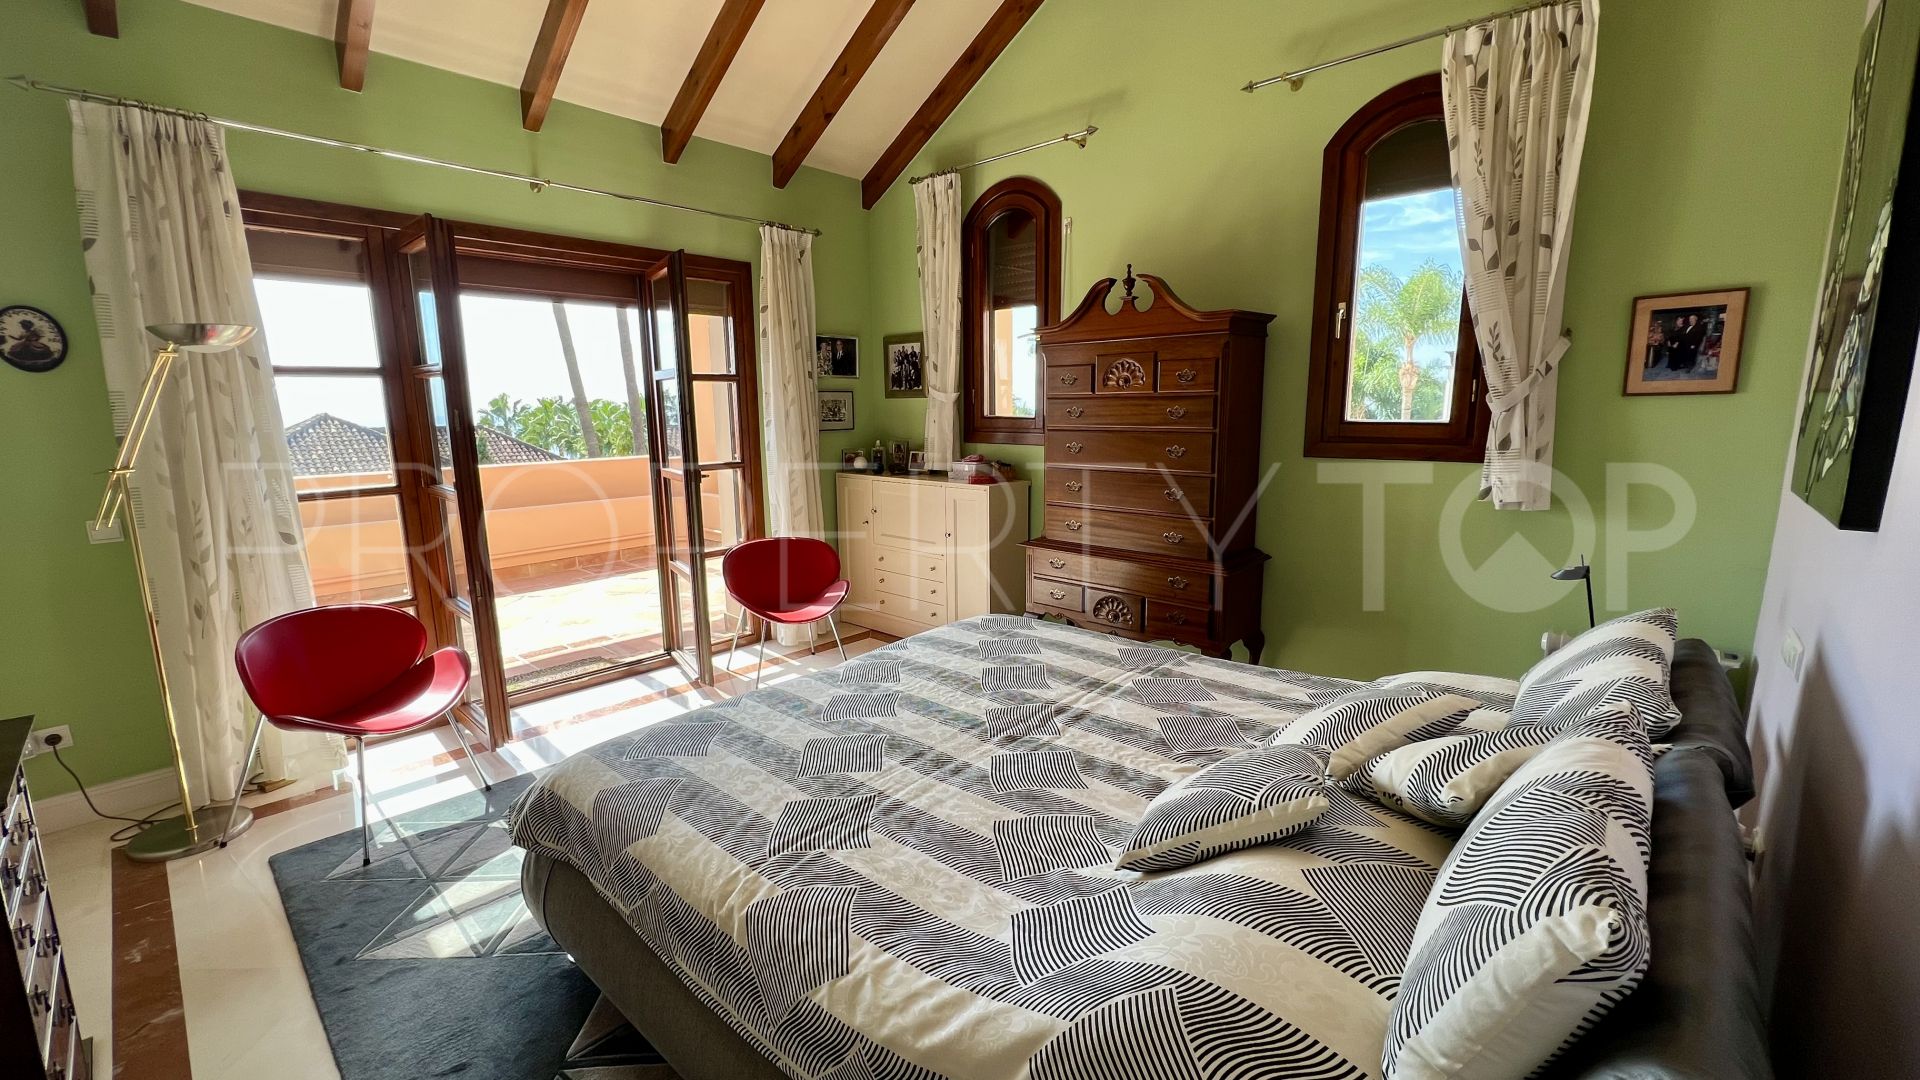 Buy Balcones de Sierra Blanca 4 bedrooms villa